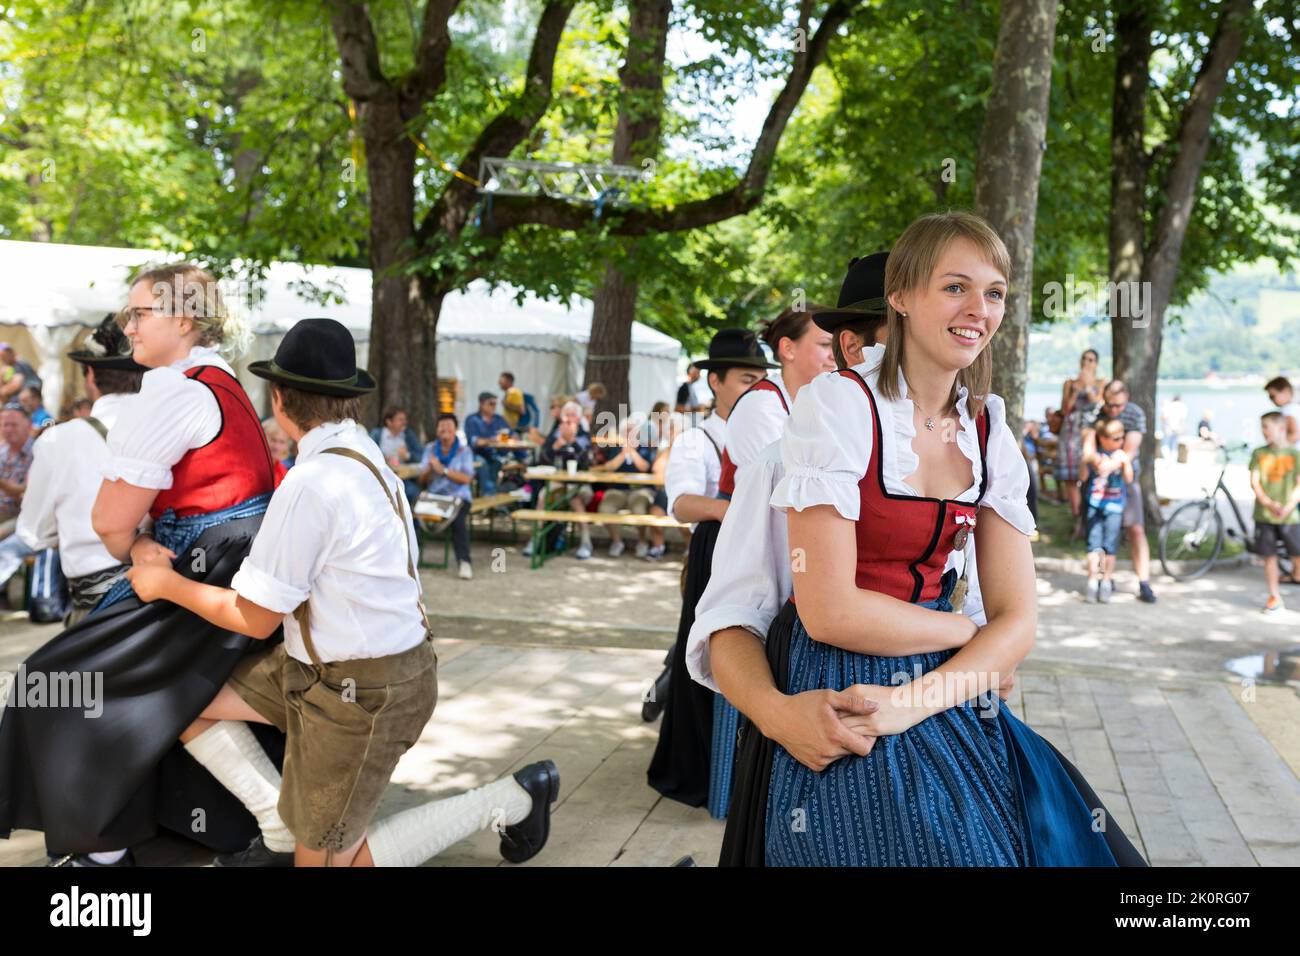 Junge Männer und Frauen tanzen in Tirol Kostüme bei einem Festmahl im Park in Zell am See, Österreich Stockfoto